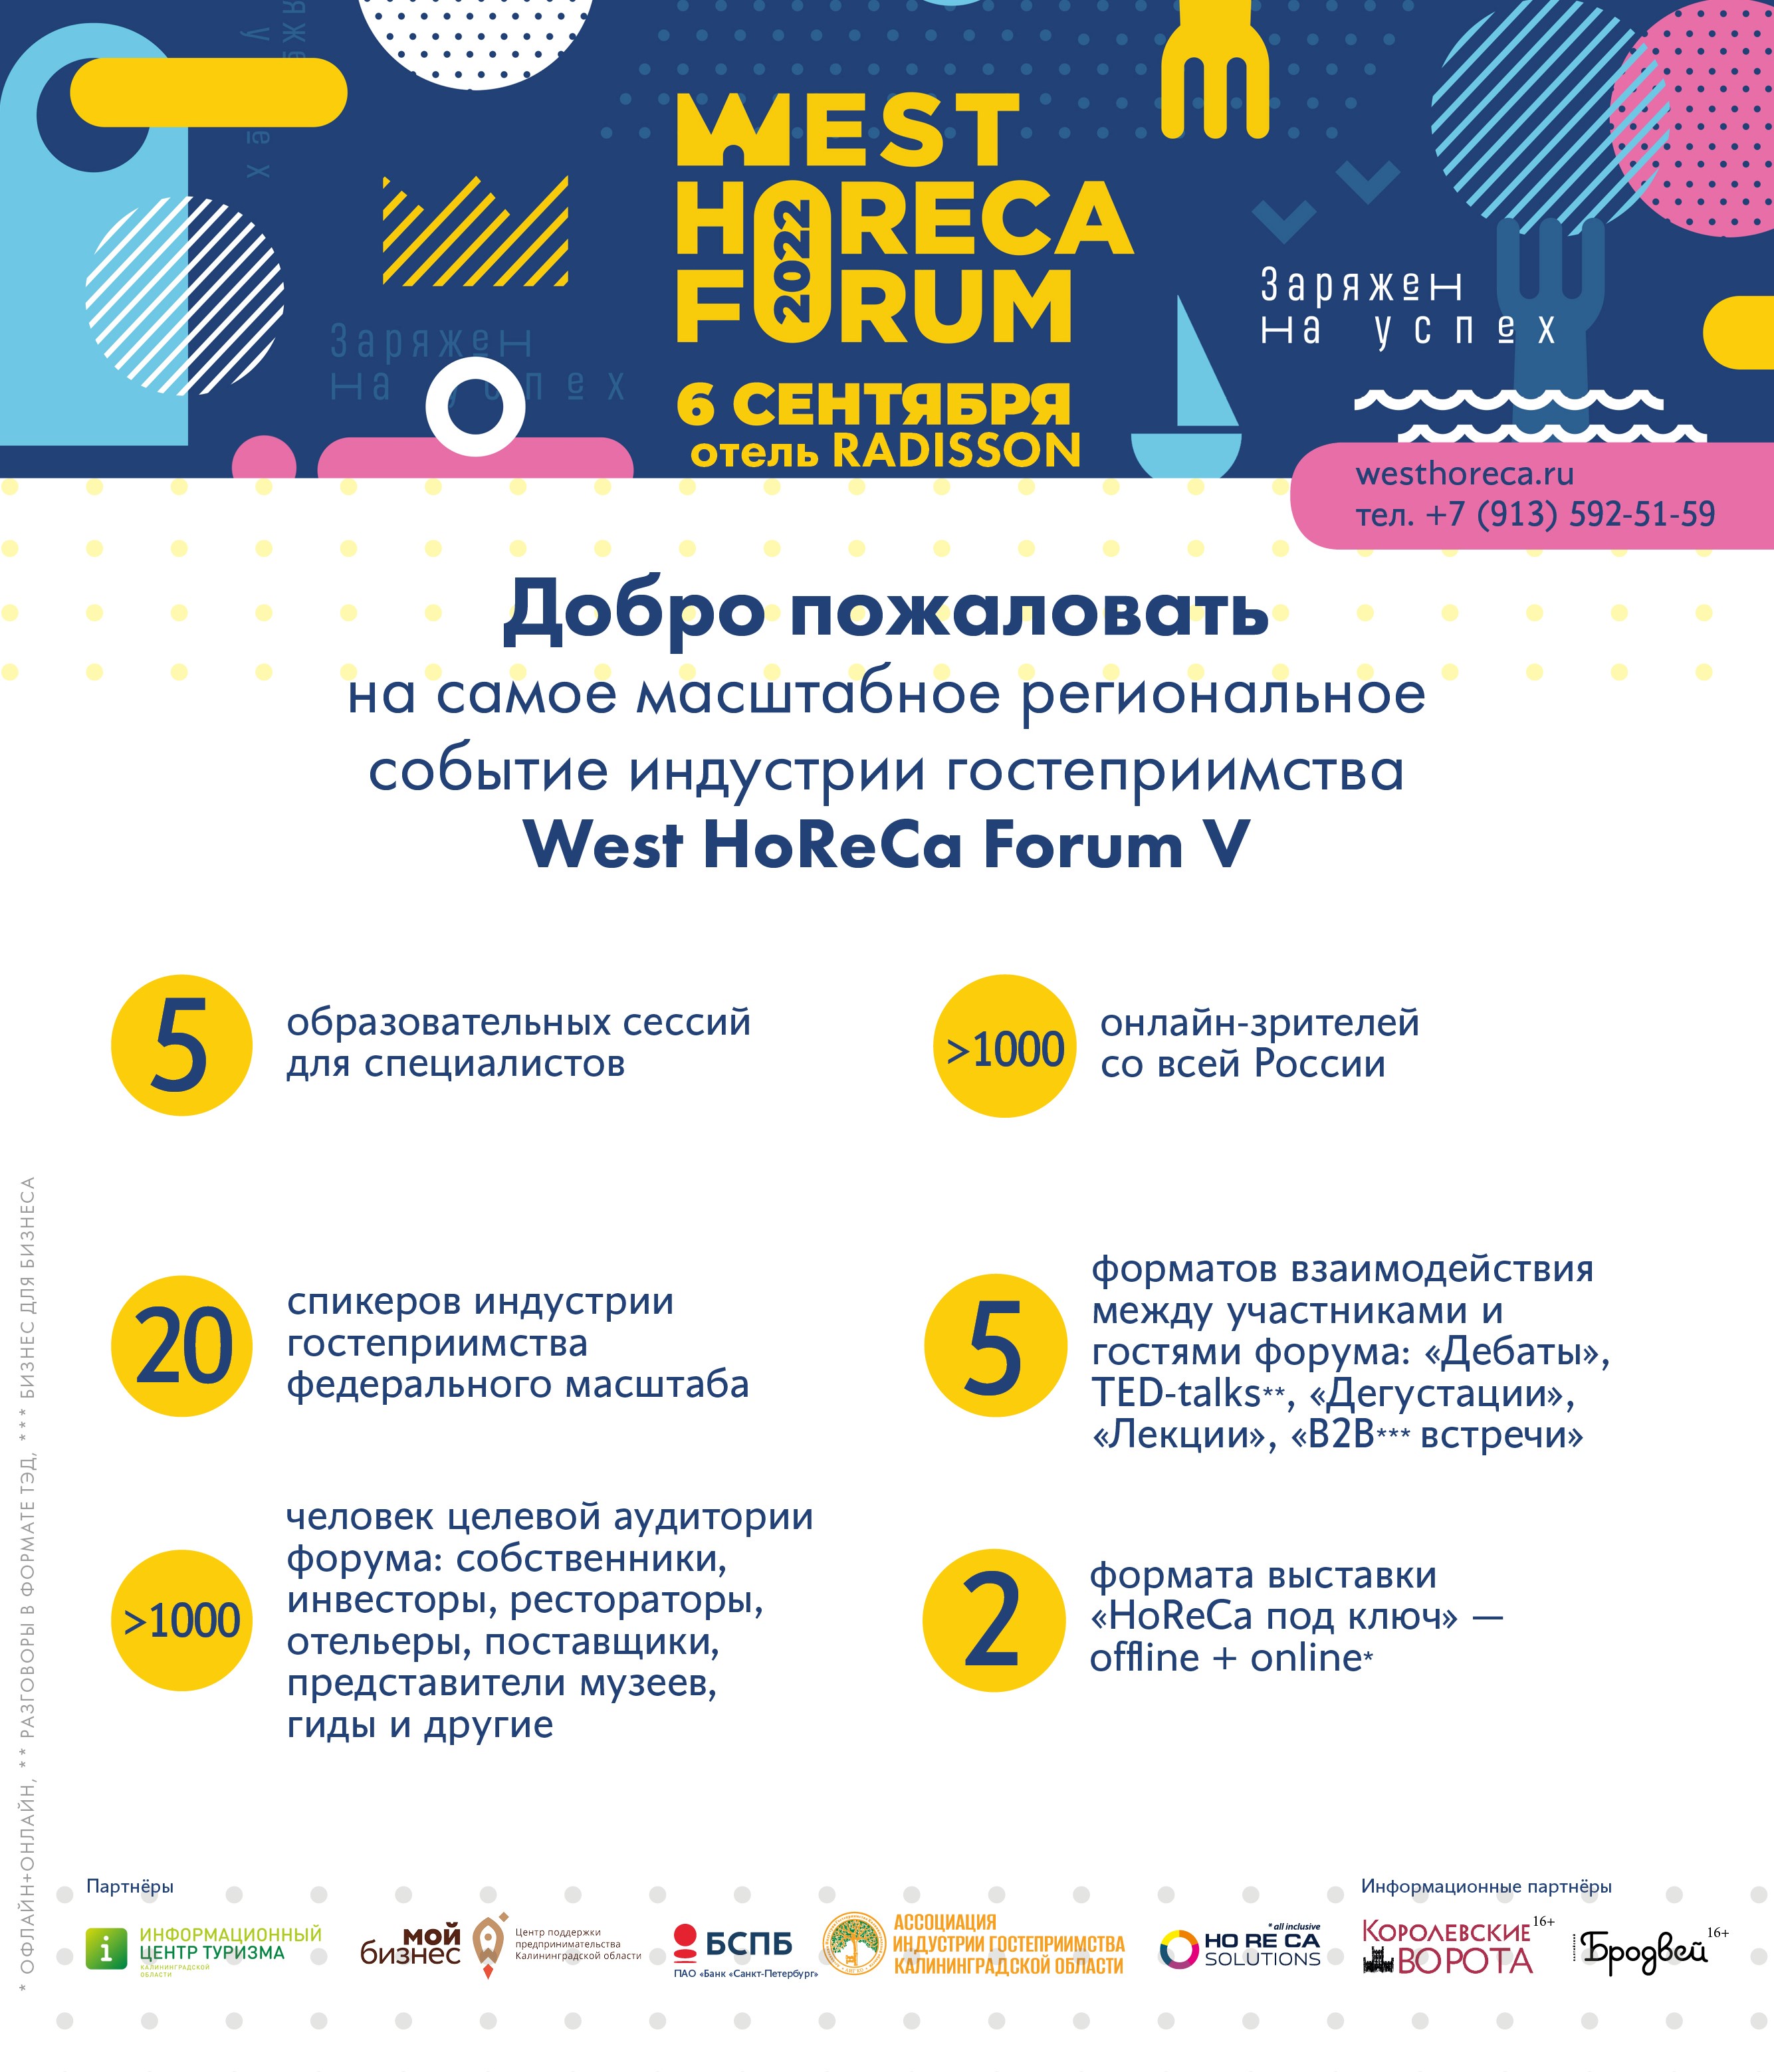 Как пройдёт юбилейный West HoReCa Forum в Калининграде 